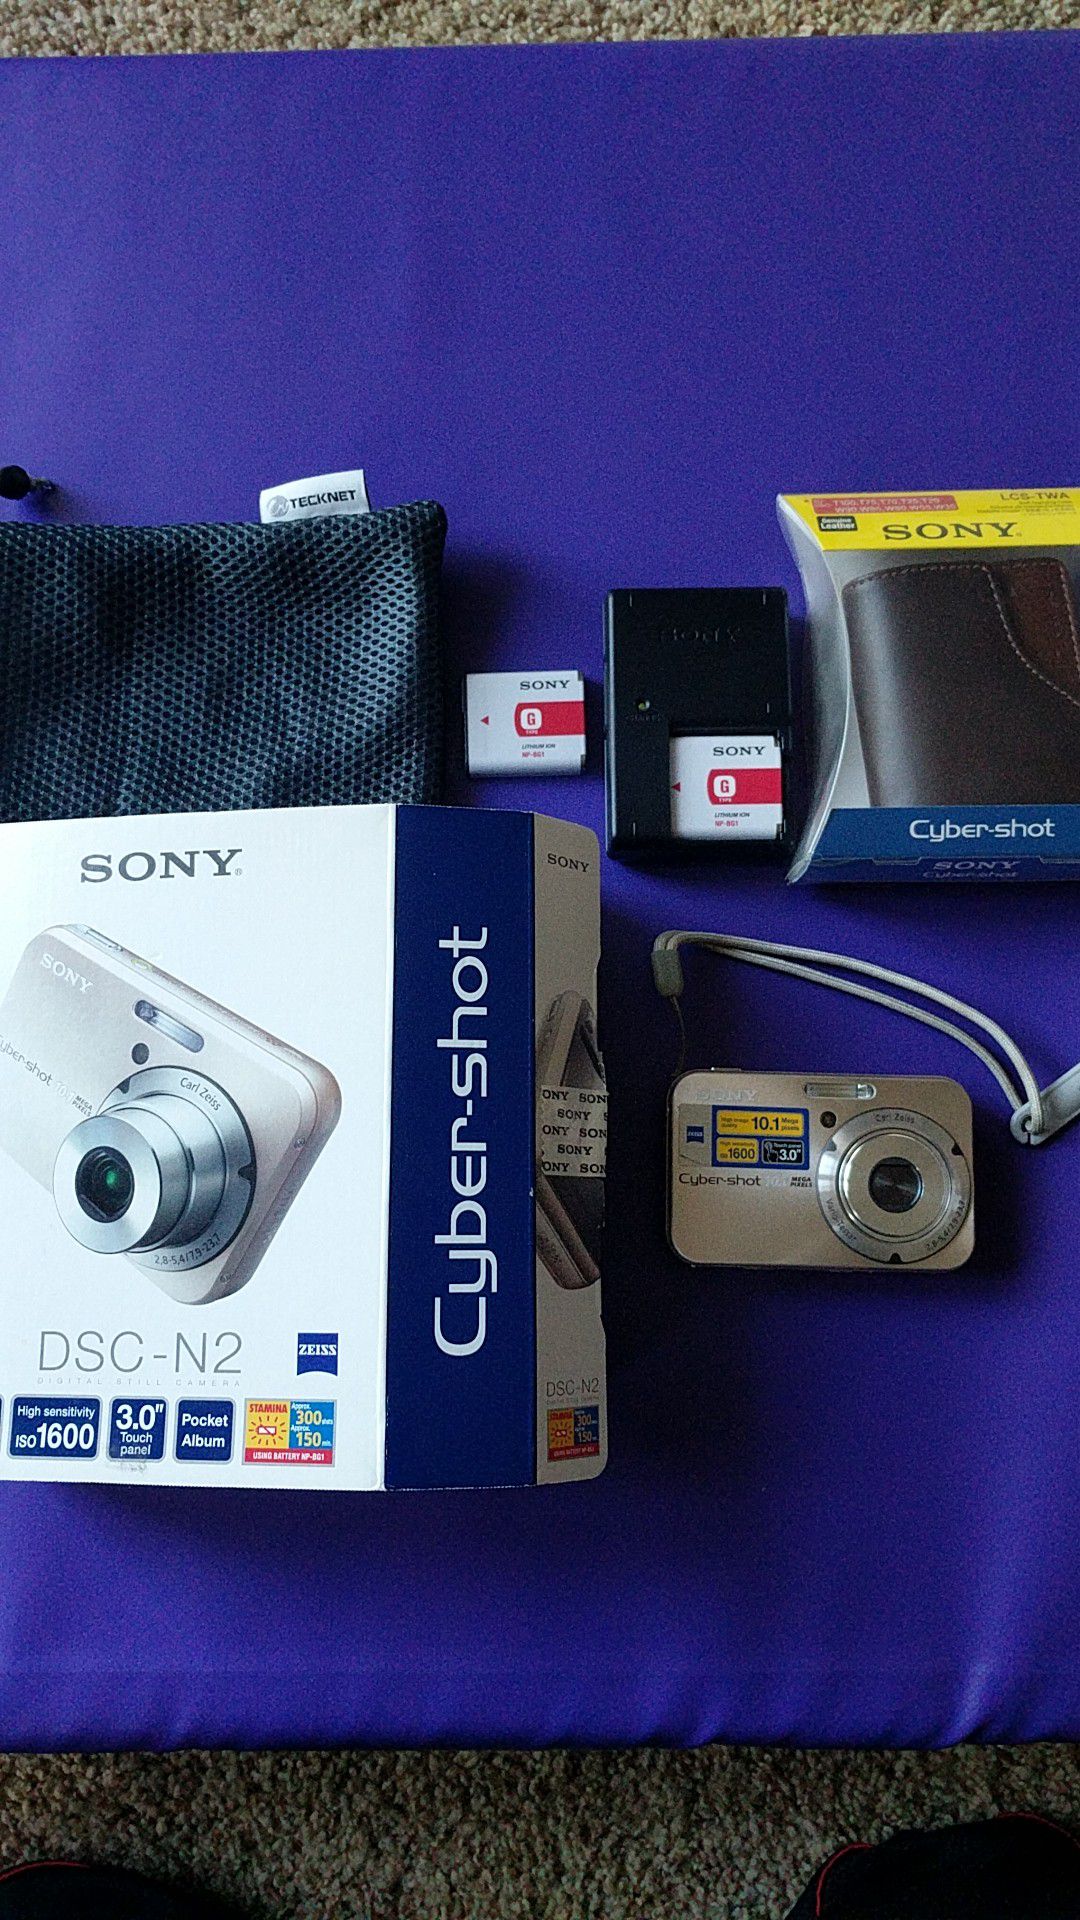 Sony DSC-N2 Digital Camera 10.1 MP bundle